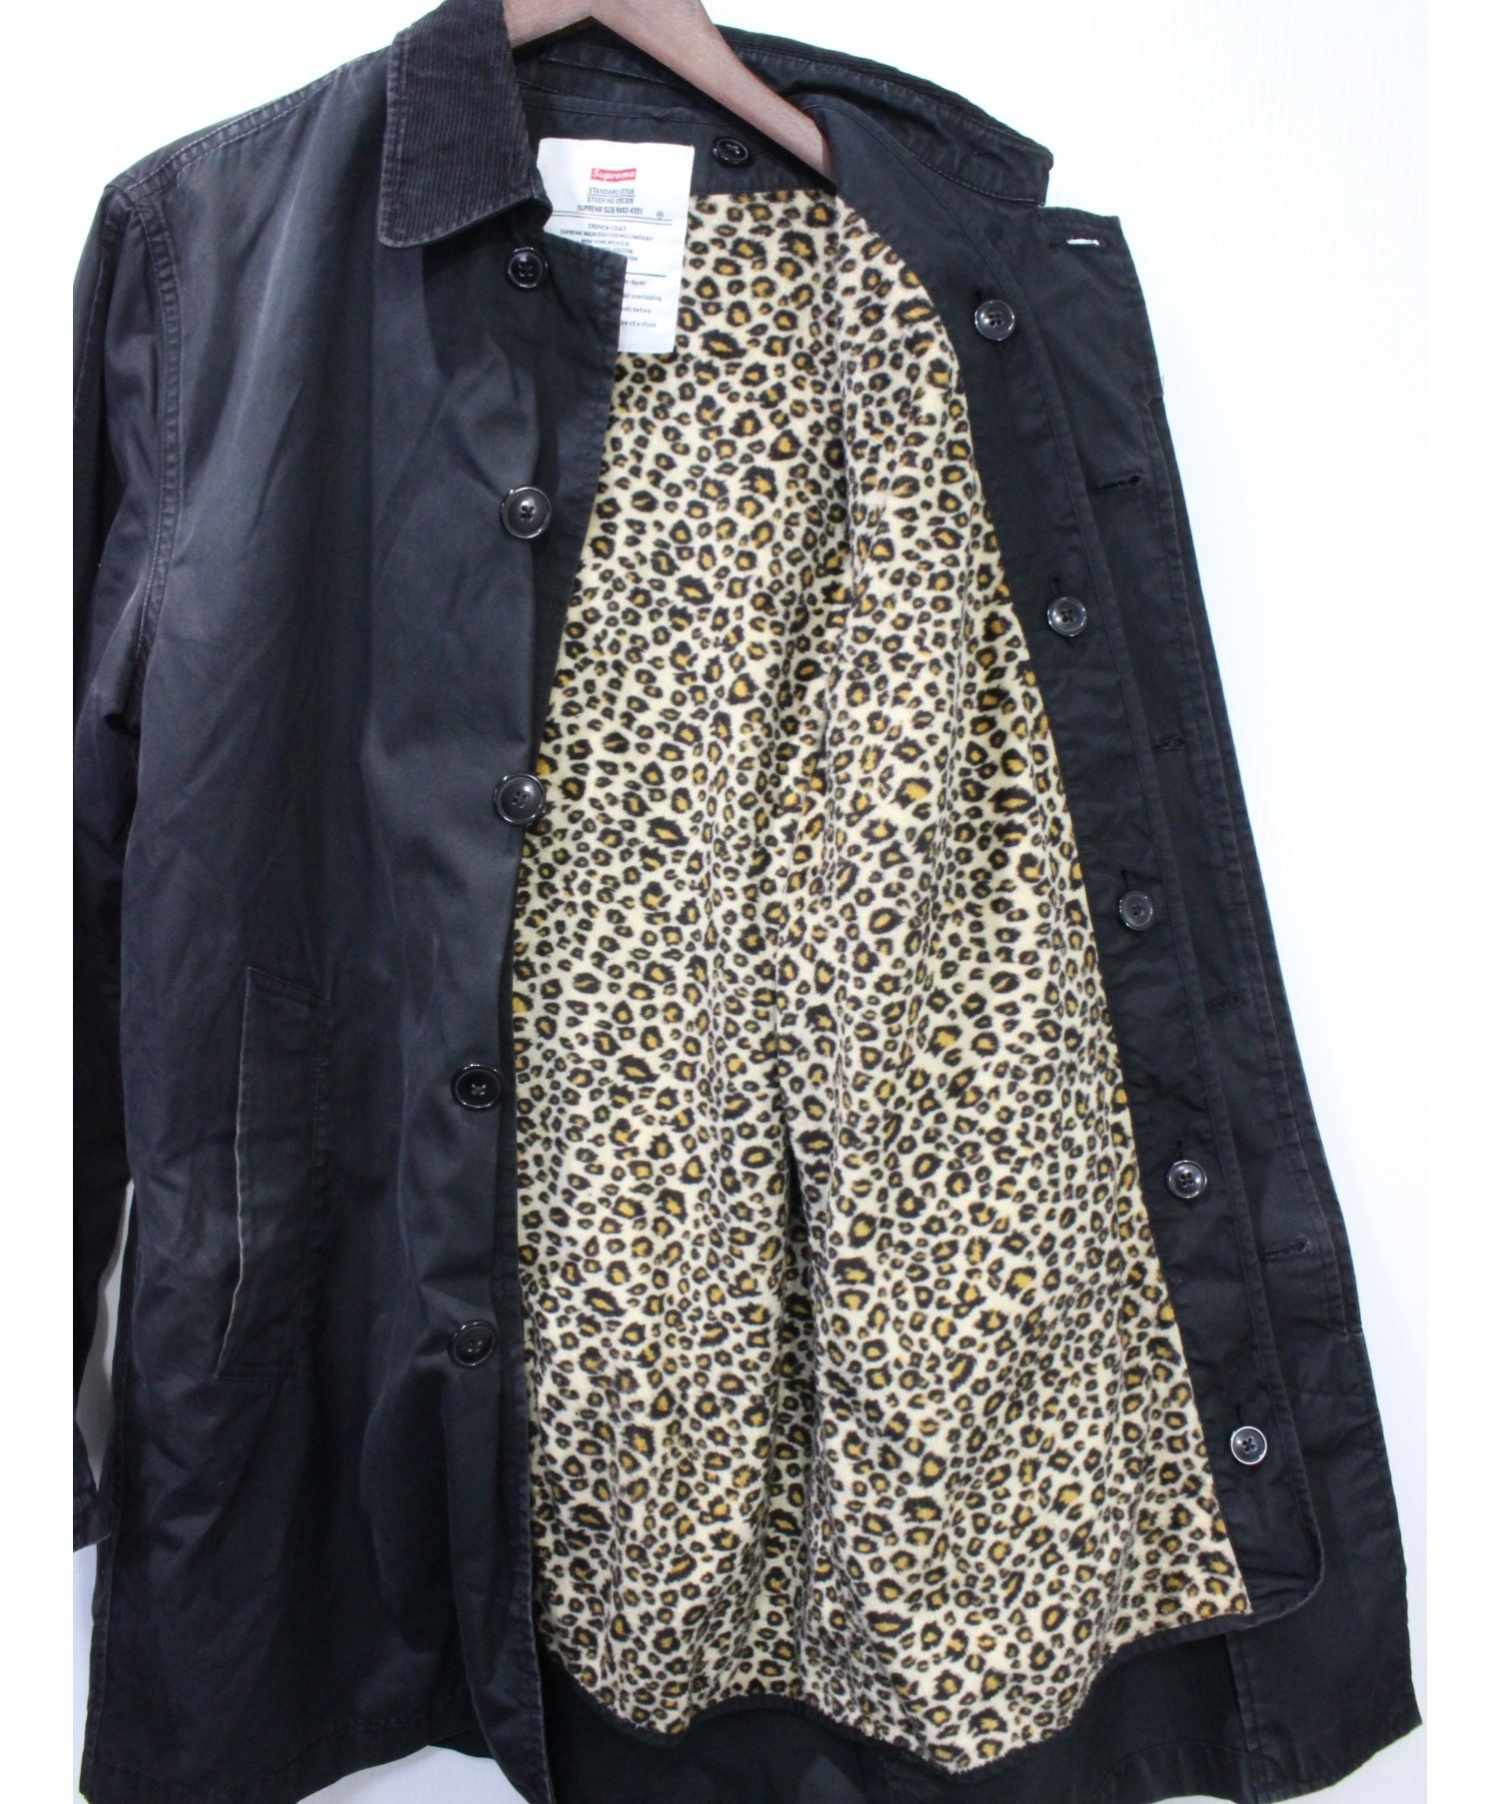 販促品製作 leopard supreme lined 11AW coat trench ステンカラーコート